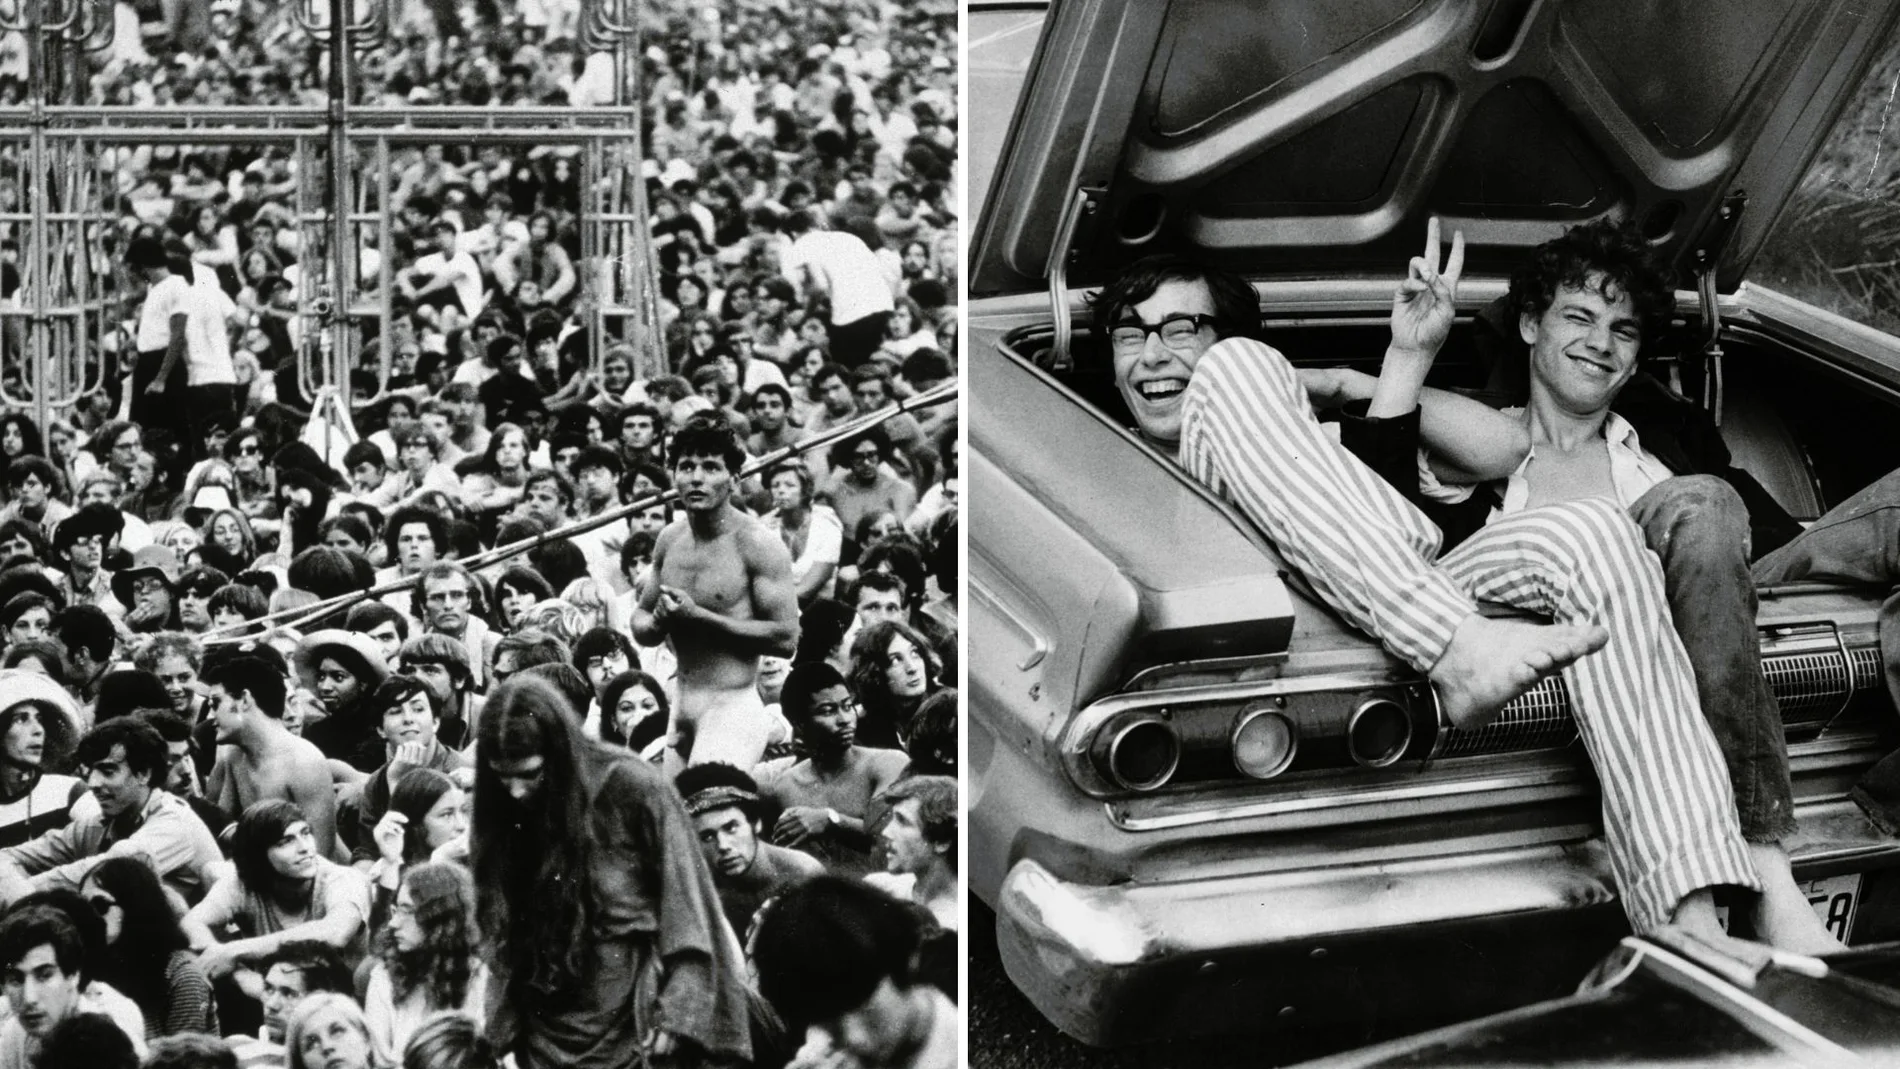 Festival de Woodstock, las imágenes y curiosidades que todavía sorprenden 52 años después 